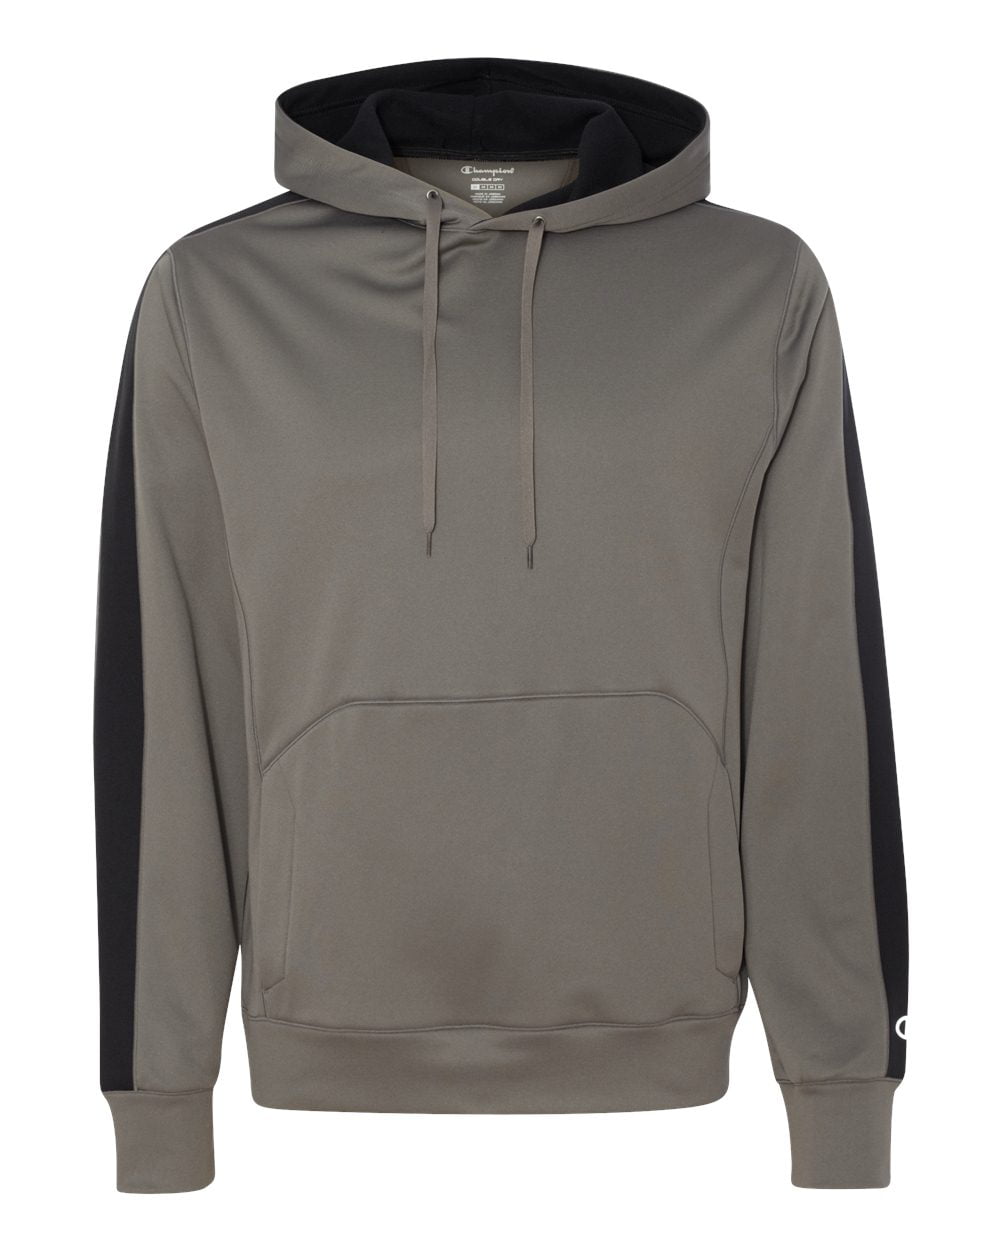 Details about   Champion Men Hoodie Sweatshirt Urban Fleece 1/4 zip Pocket Script C Logo S-2XL 